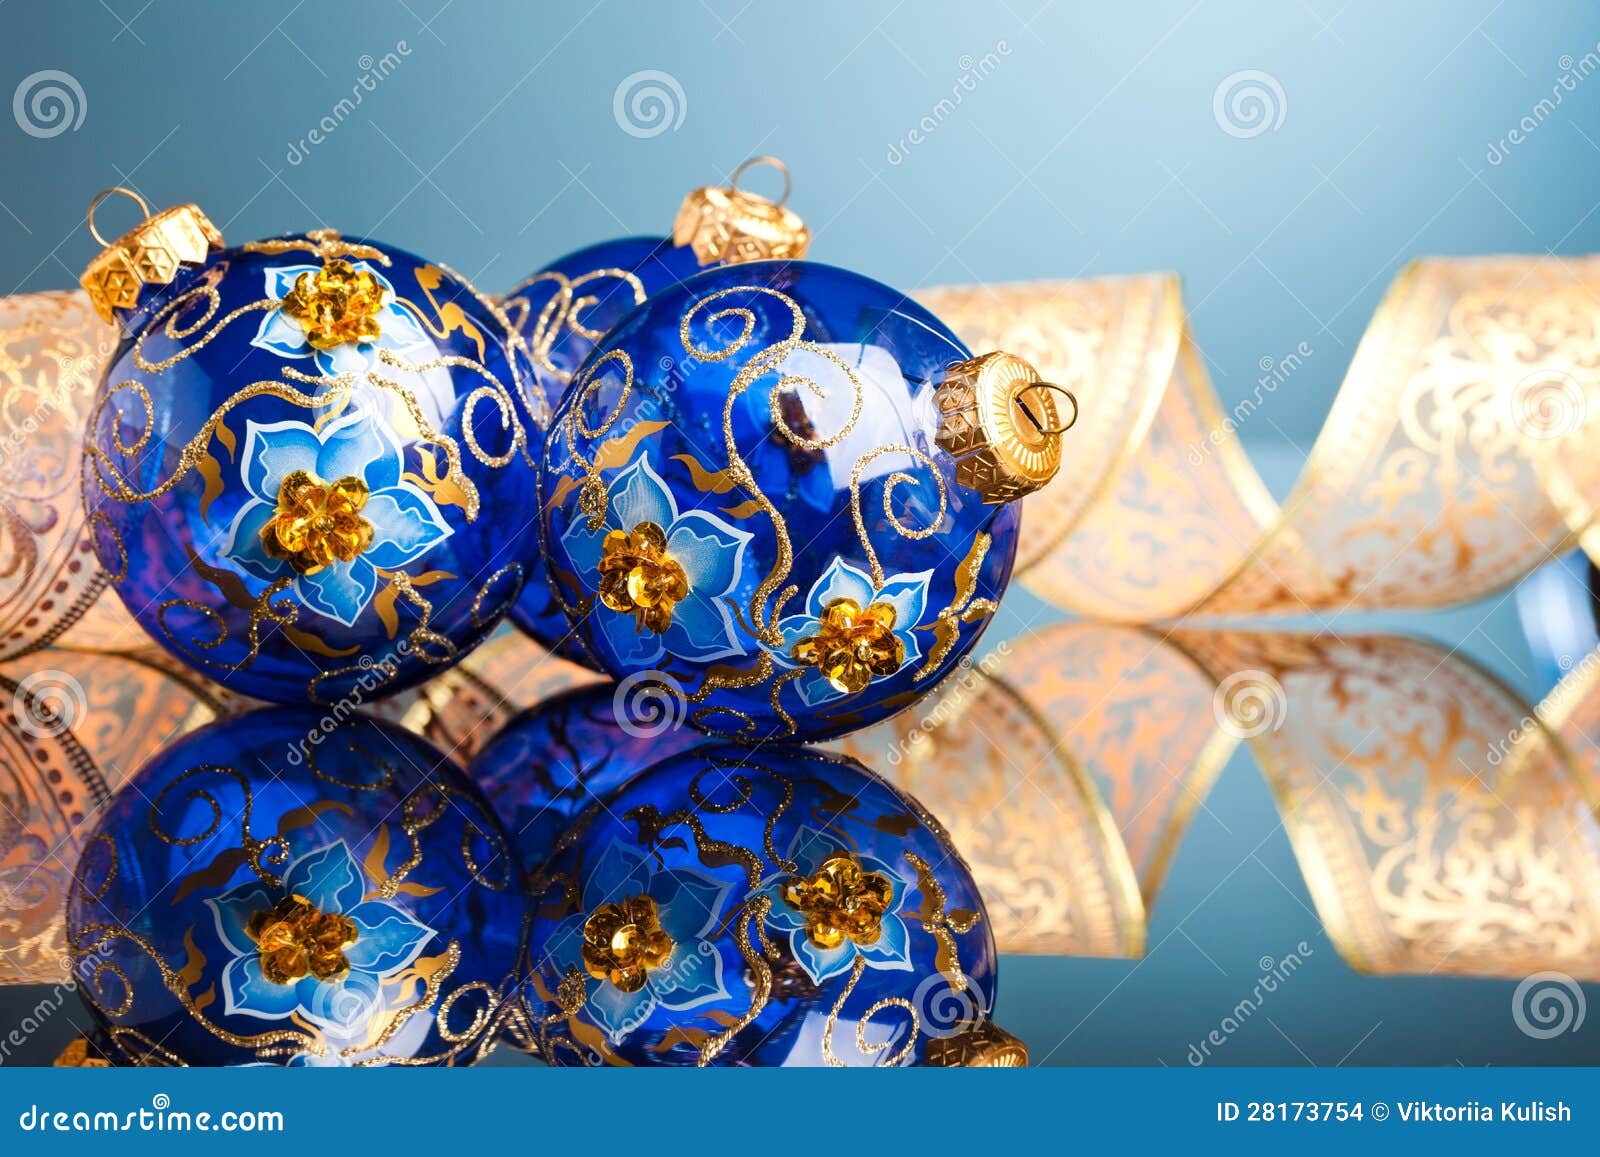 Christmas decoration balls stock photo. Image of celebration - 28173754